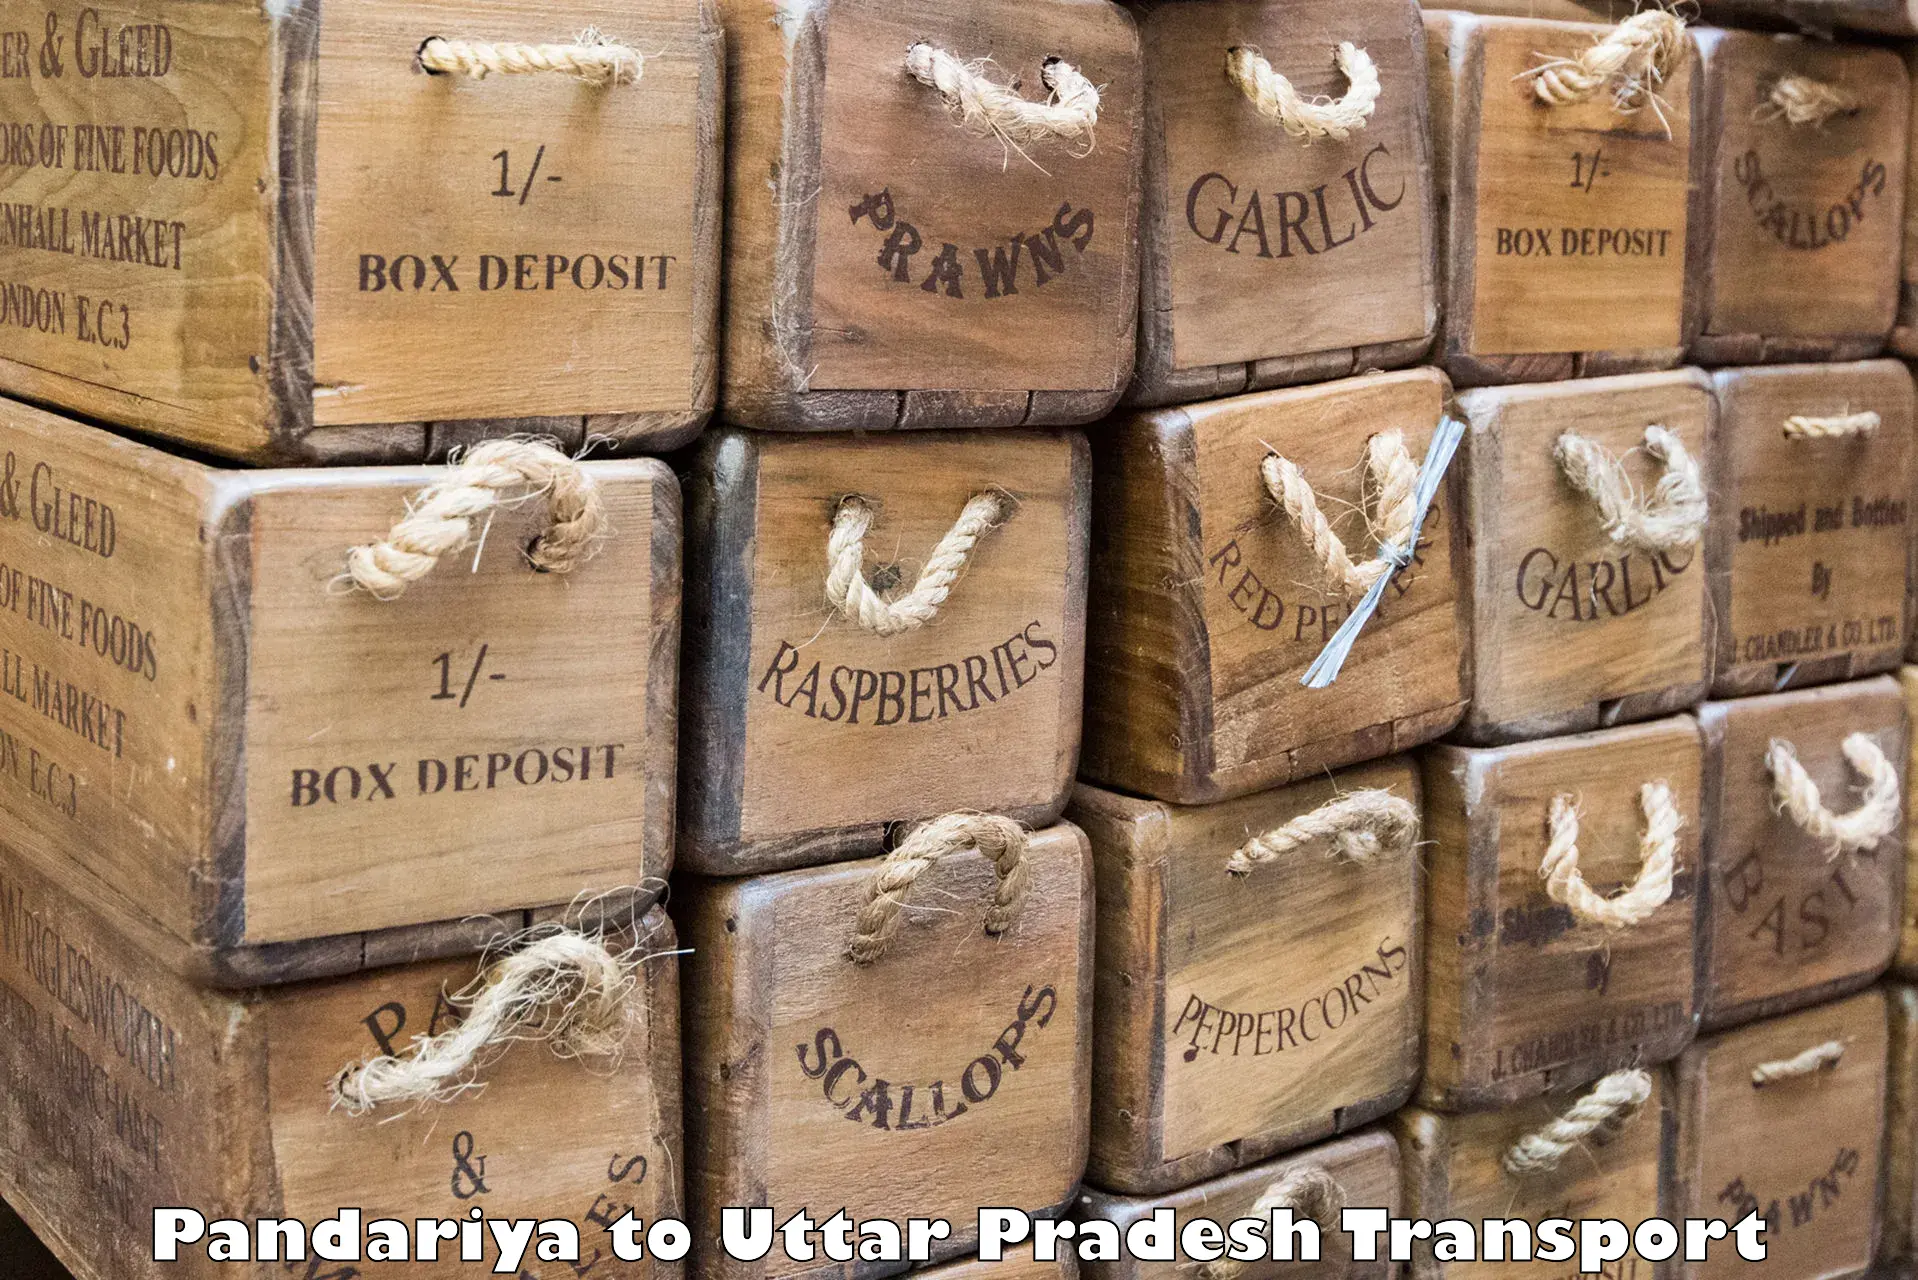 Two wheeler parcel service Pandariya to Varanasi